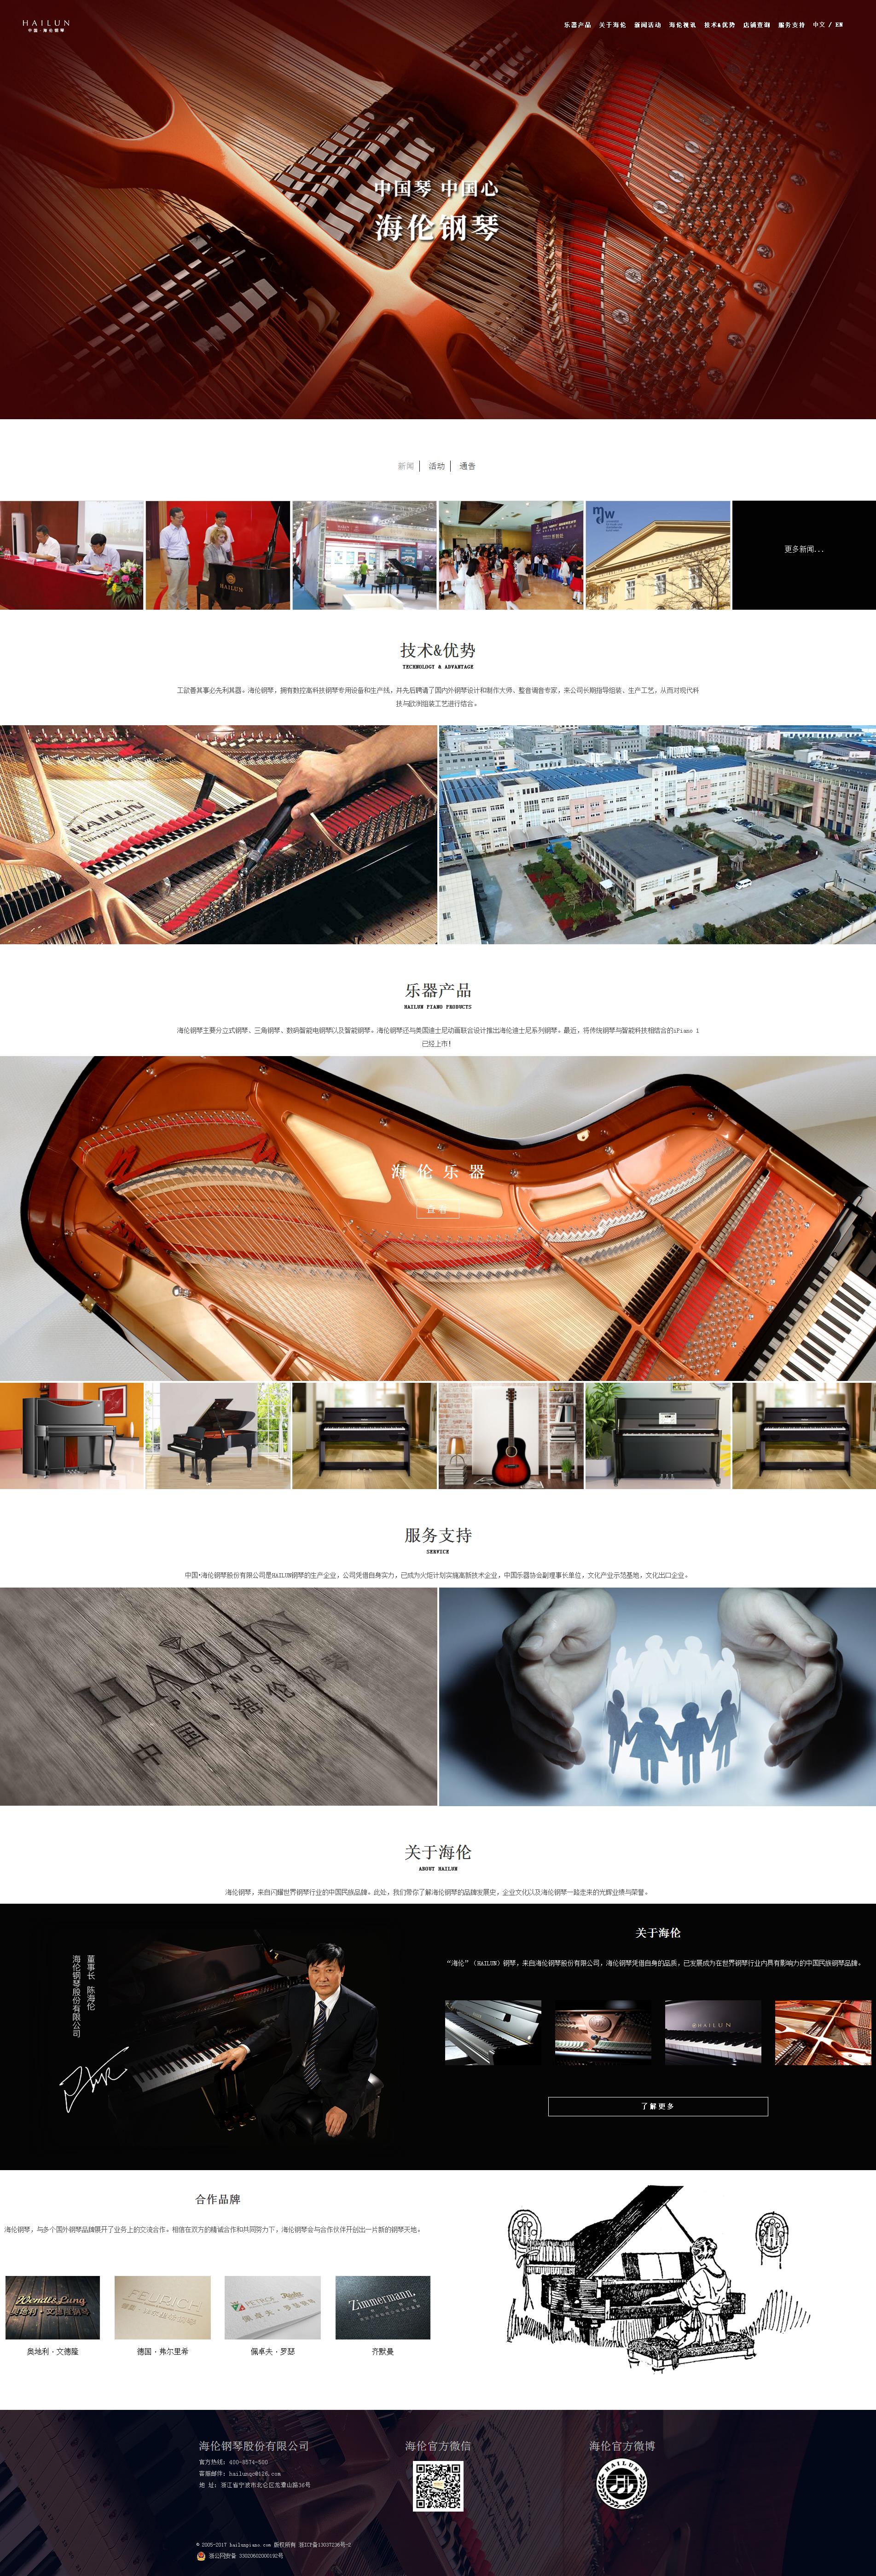 海伦钢琴，闪耀世界钢琴行业的中国民族品牌.jpg